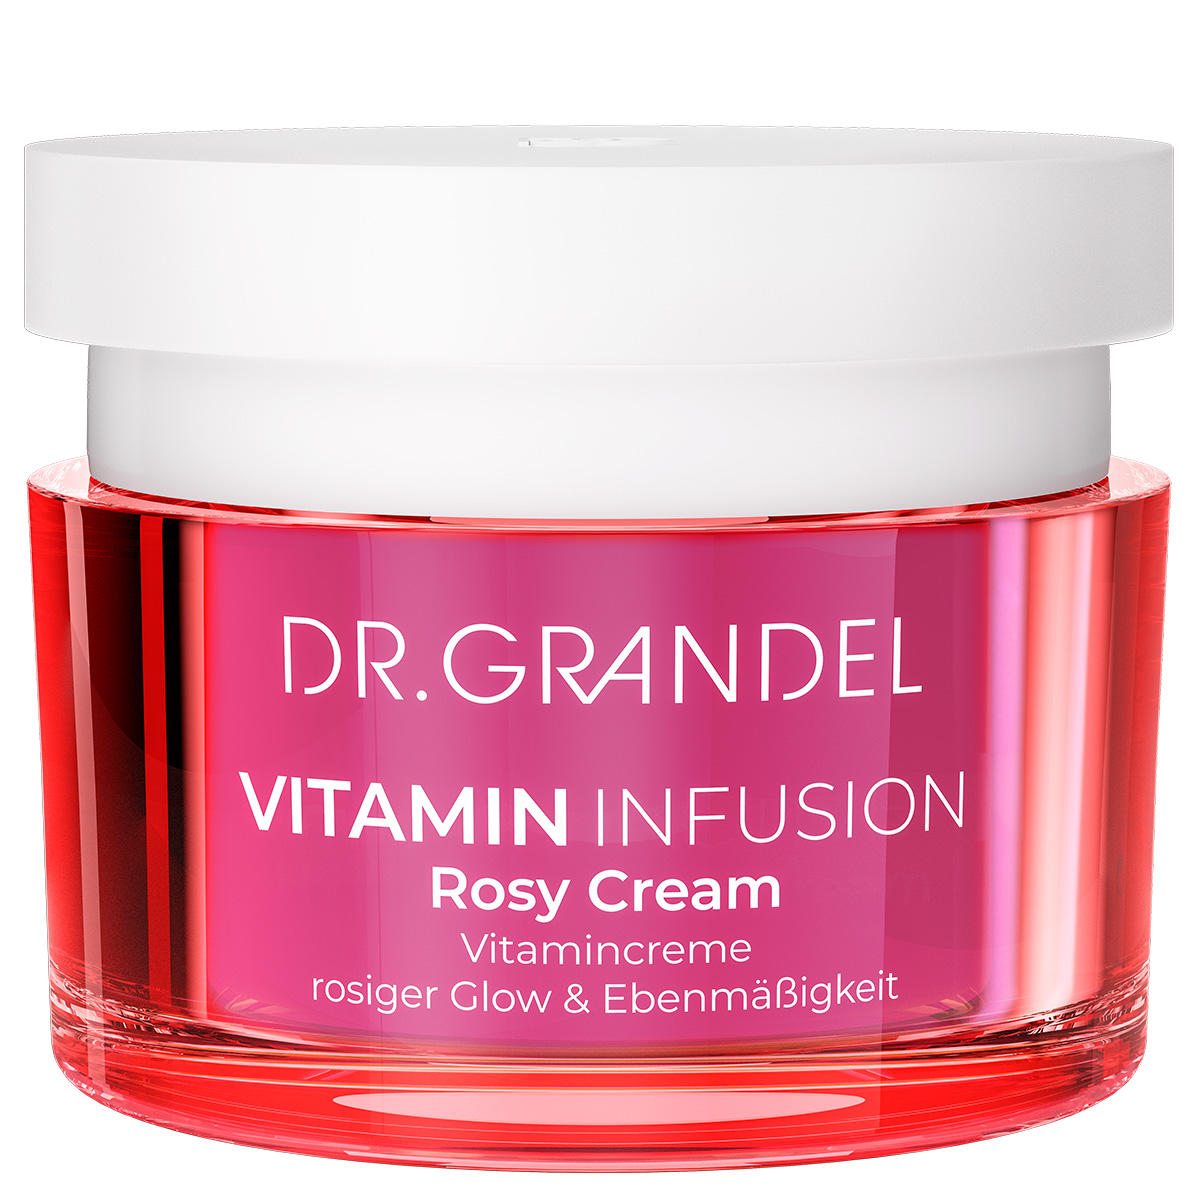 DR. GRANDEL Vitamin Infusion Rosy Cream 50 ml - 1